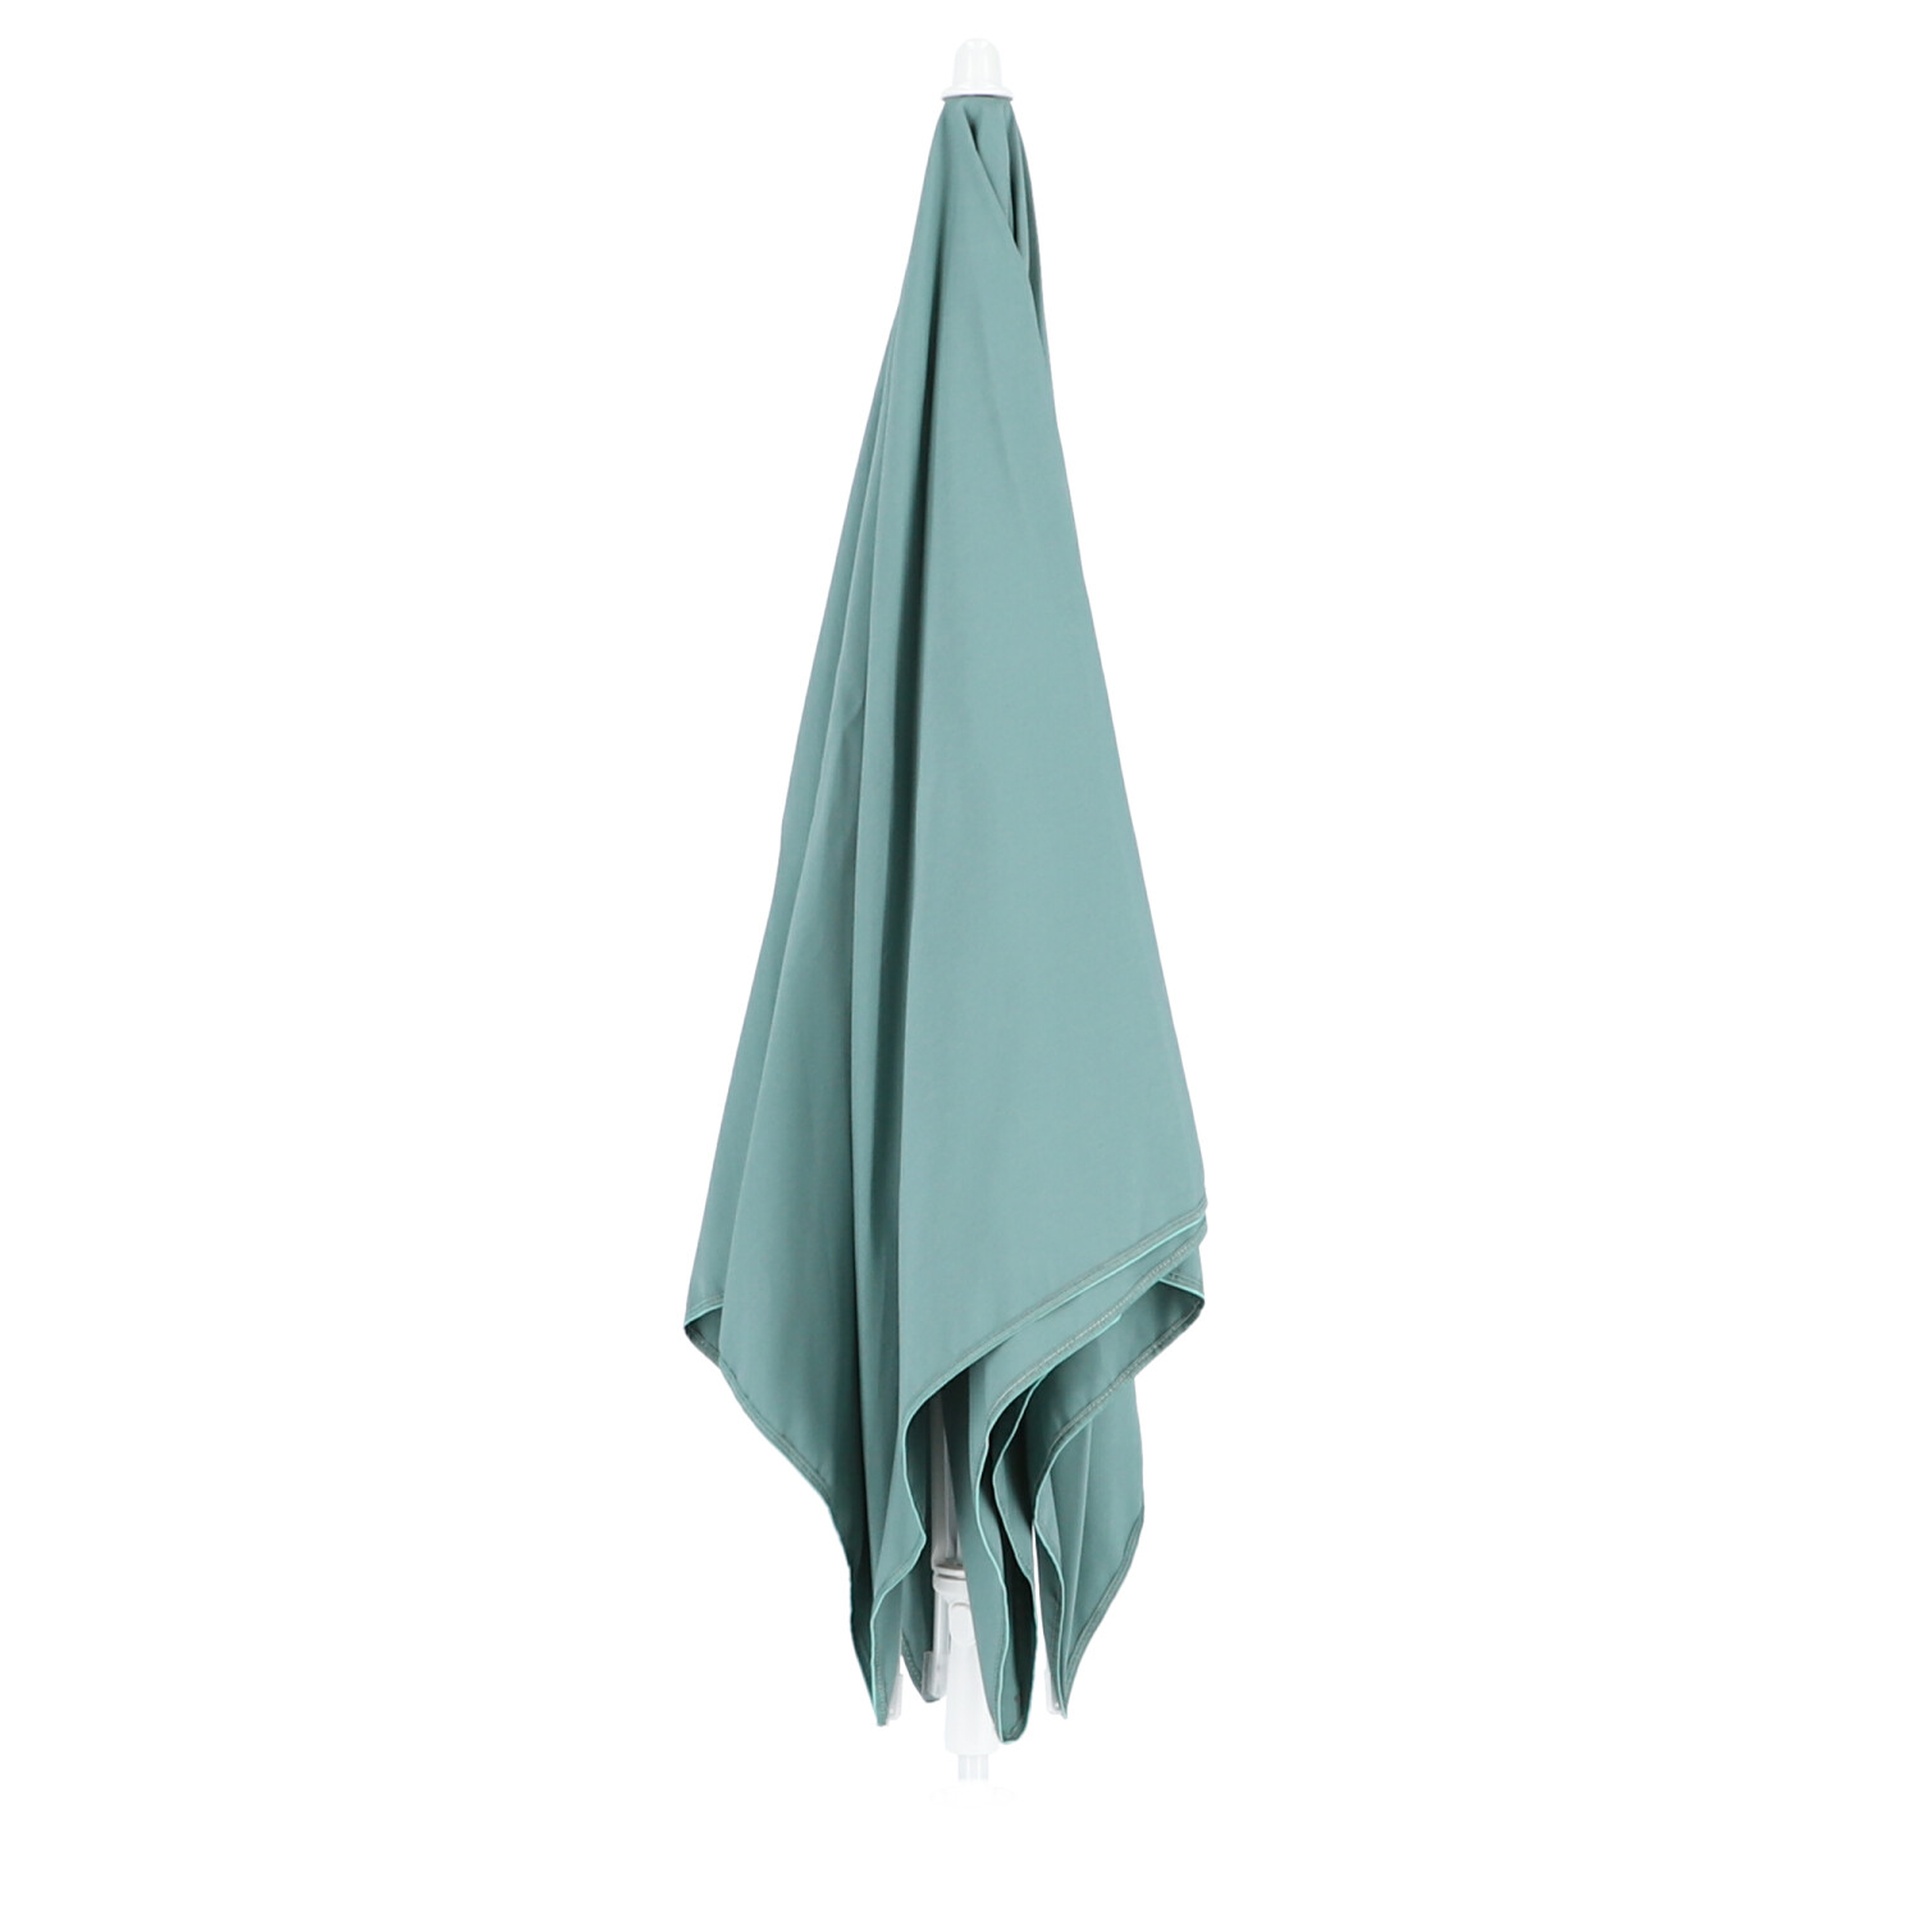 Der Sonnenschirm Murano überzeugt mit seinem modernen Design. Die Form des Schirms ist Eckig. Designet wurde er von der Marke Jan Kurtz und hat die Farbe Seeblau.